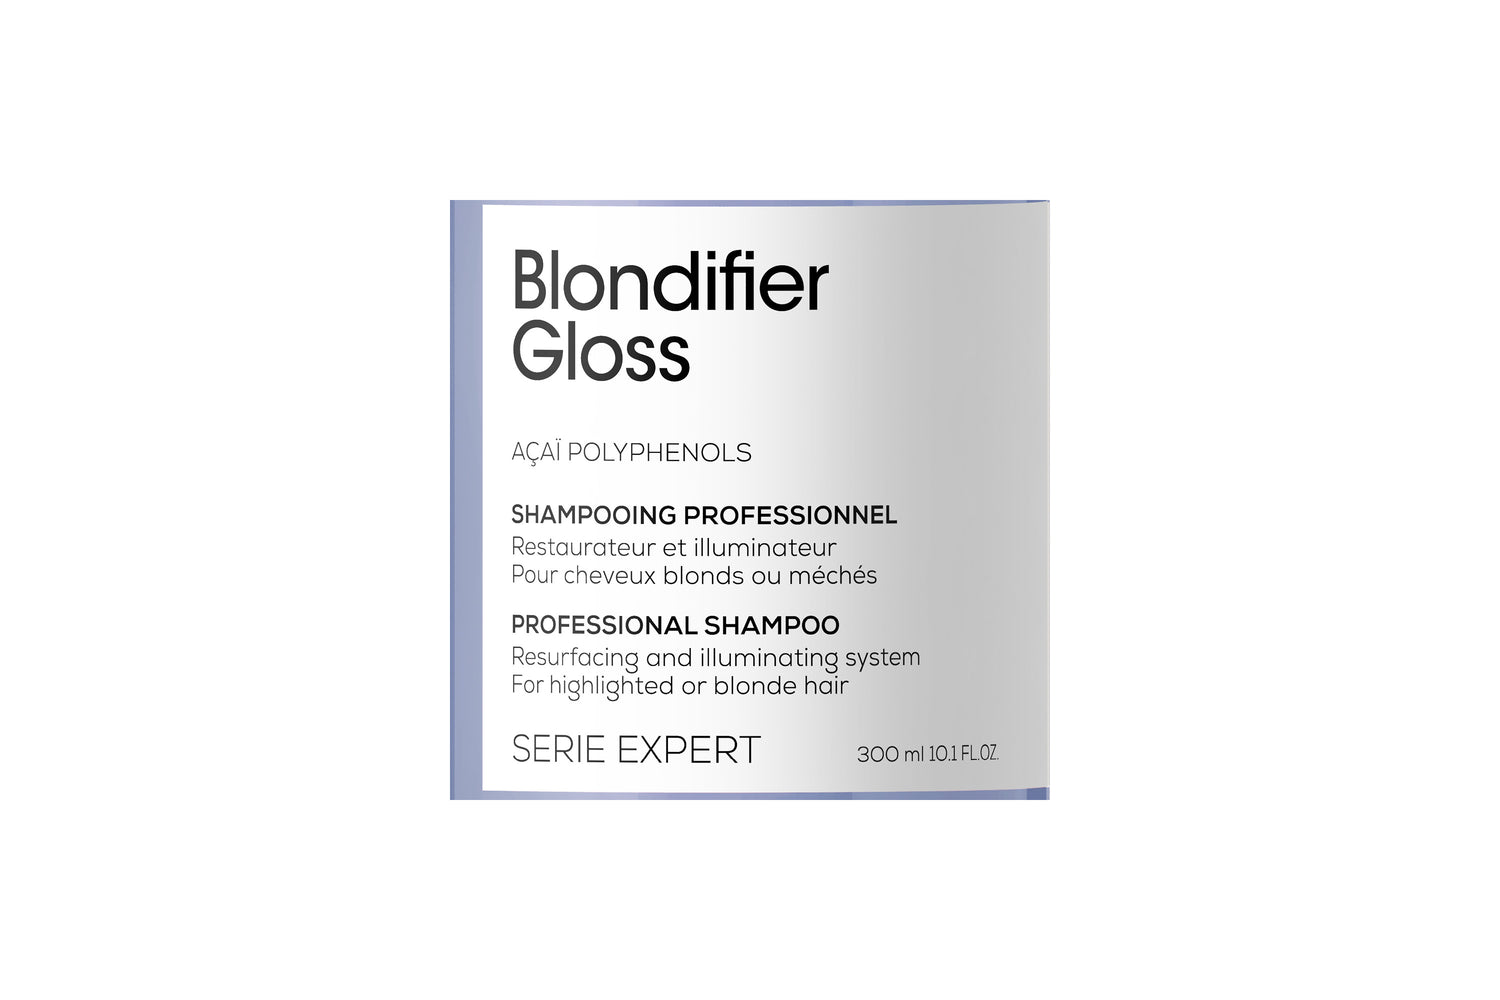 Loreal Professionnel Blondifier gloss shampoo. Reparerande och ljusreflekterande* professionellt shampoo för slingat eller blont hår. Berikad med extrakt av acaibär som innehåller polyfenoler.